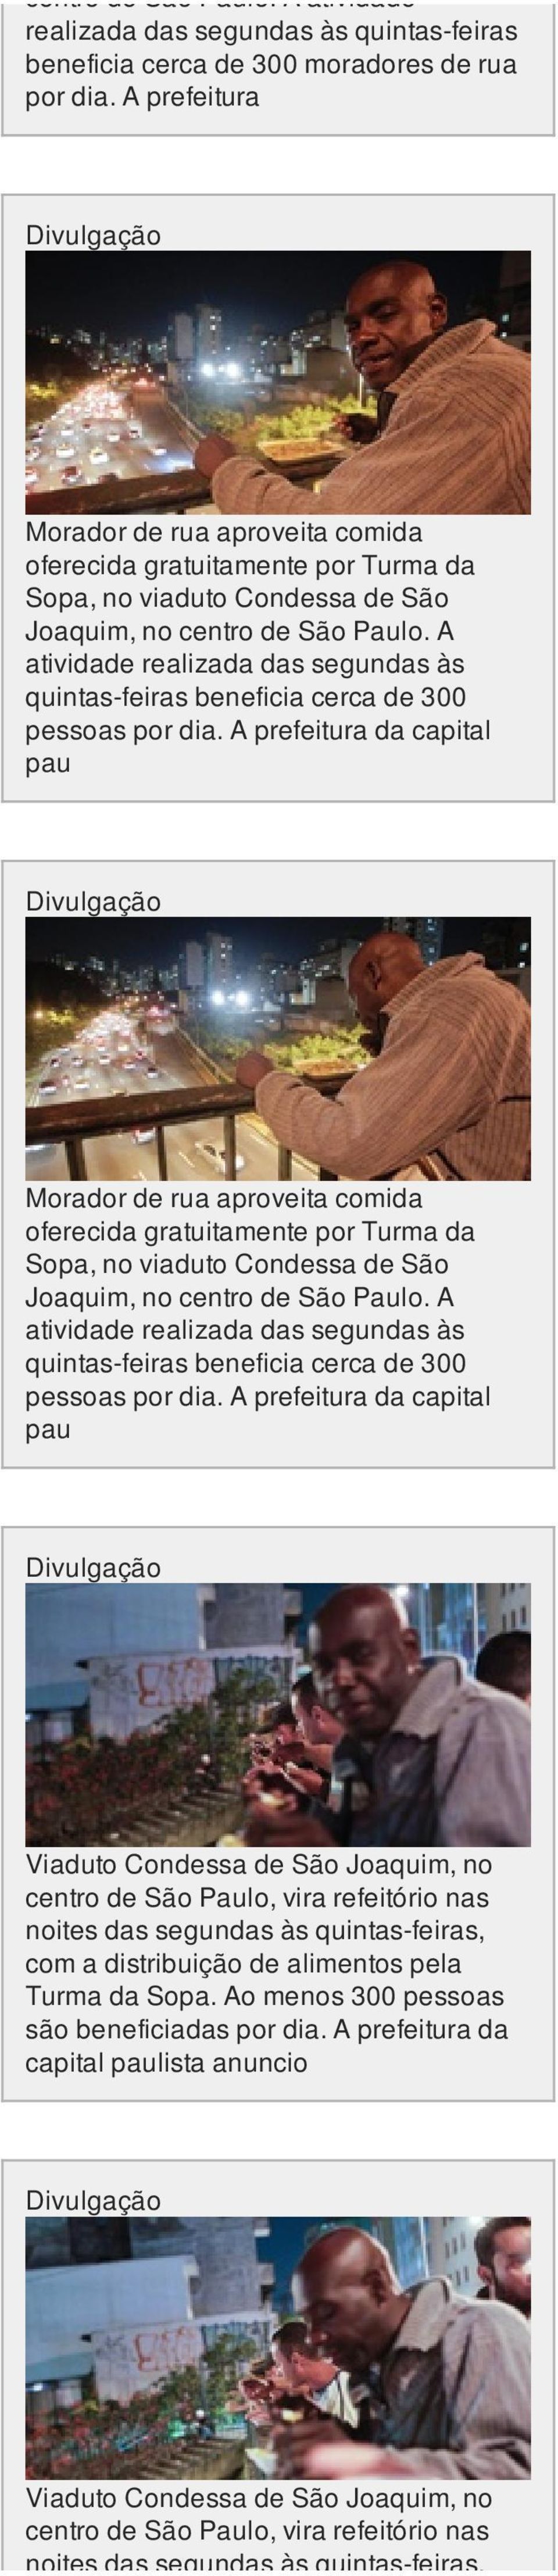 A prefeitura da capital pau Morador de rua aproveita comida oferecida gratuitamente por Turma da Sopa, no viaduto Condessa de São Joaquim, no centro de São Paulo.